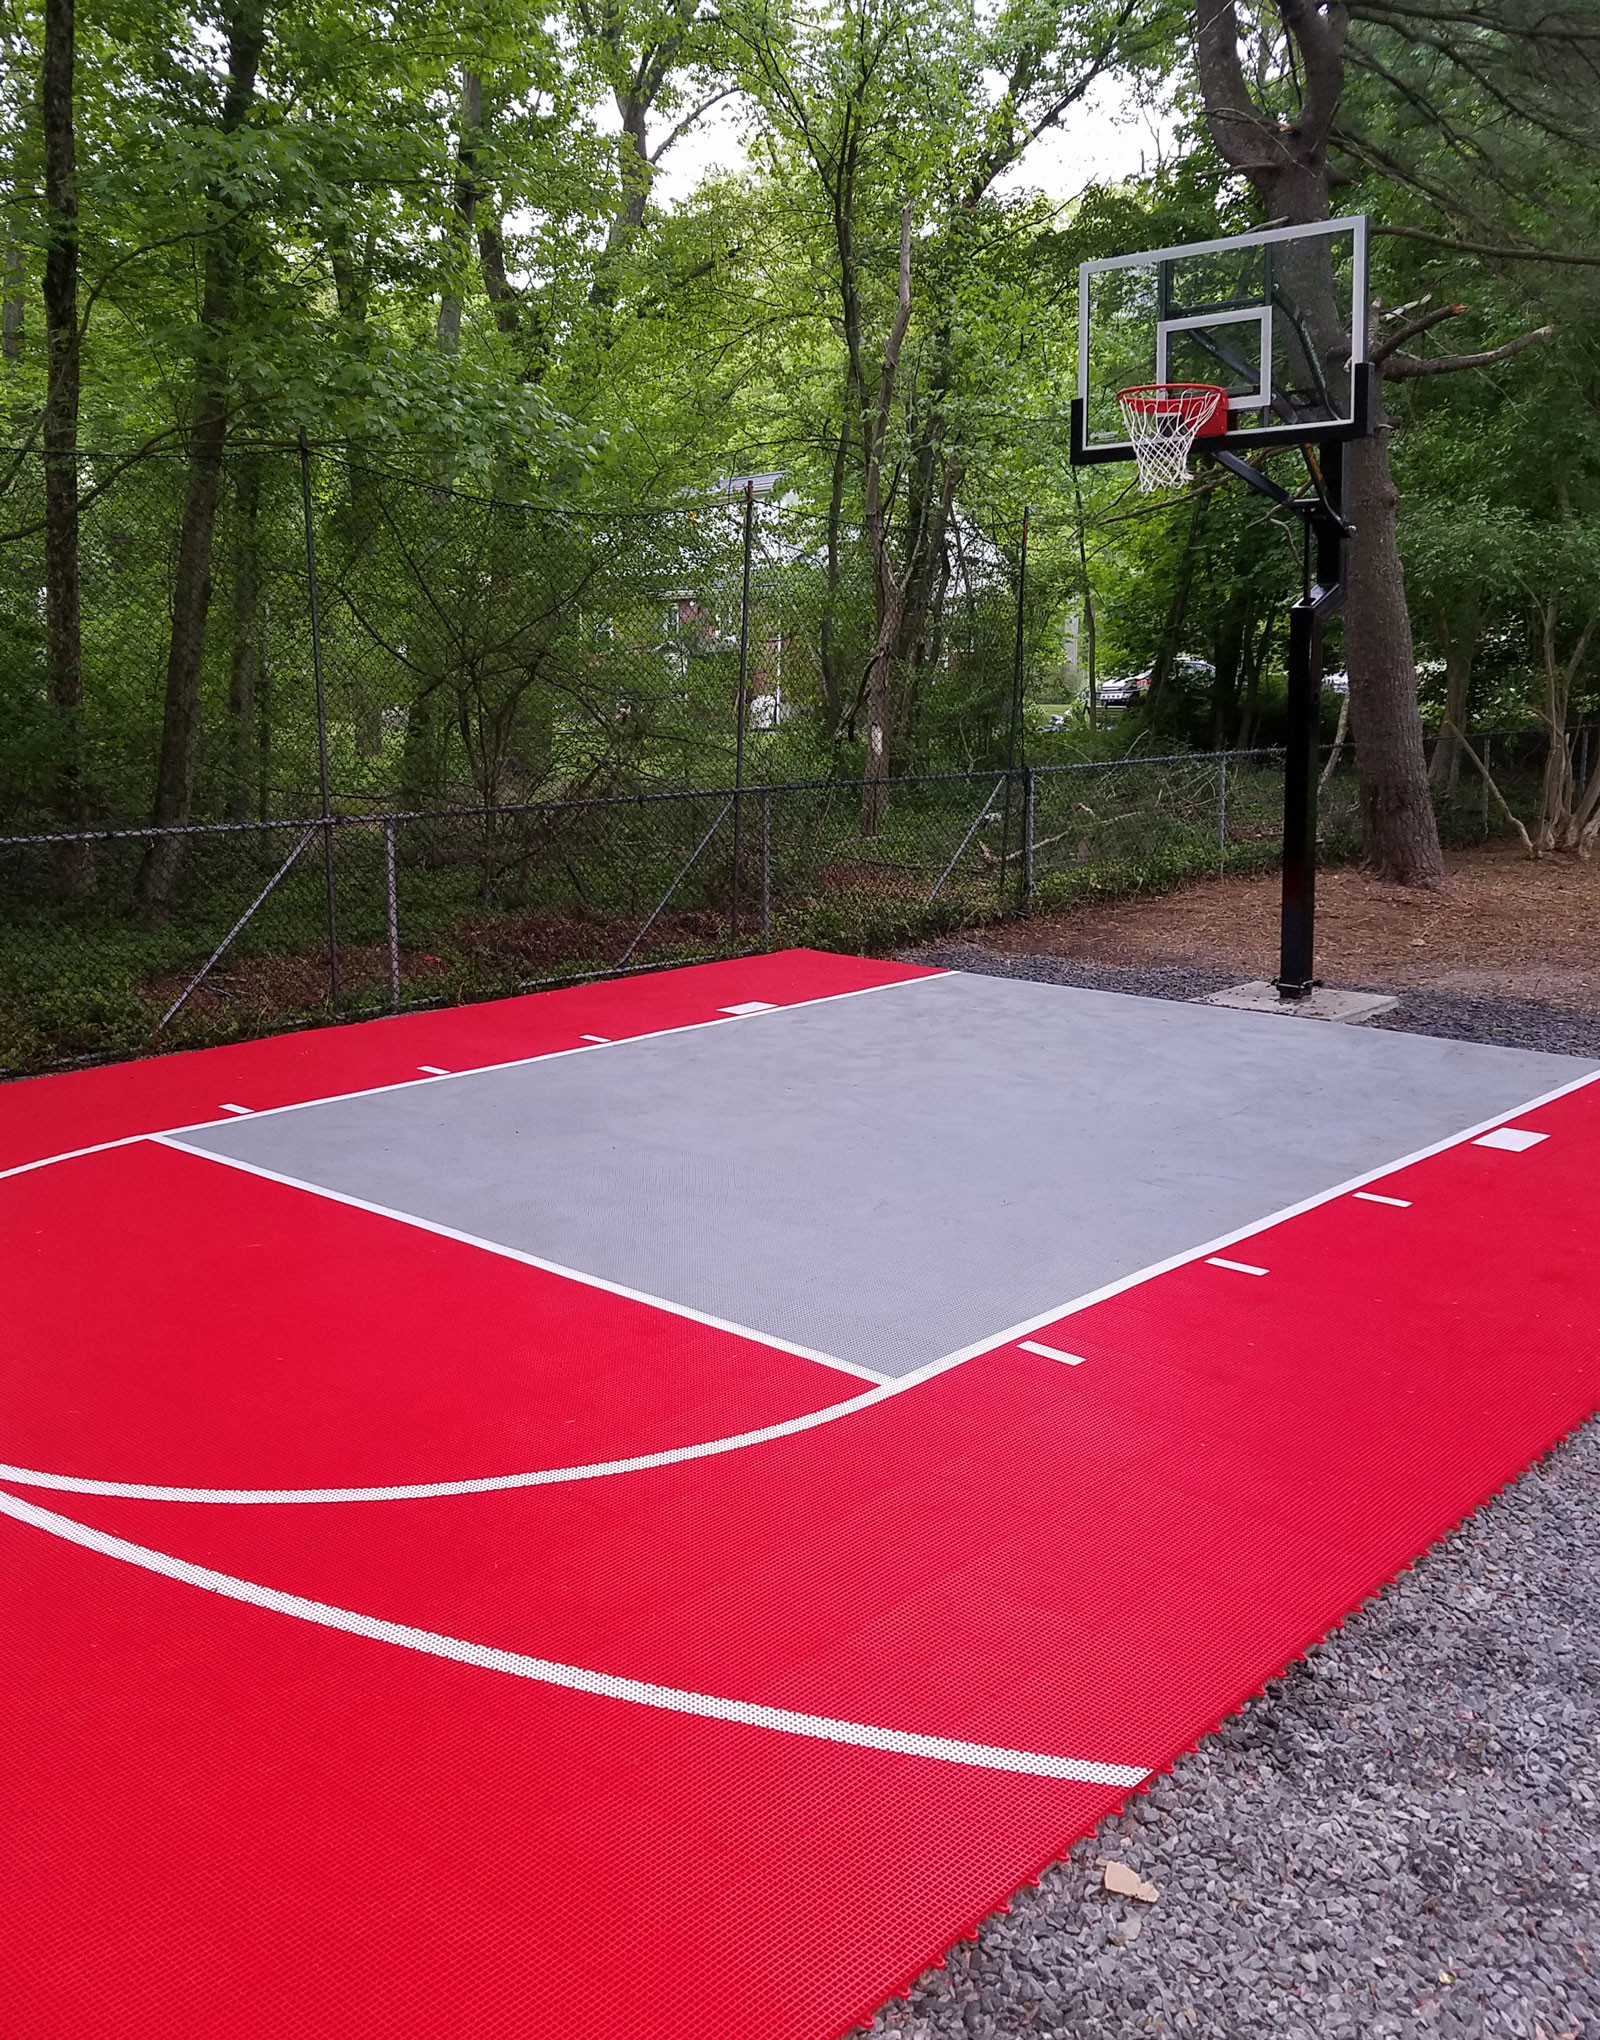 Backyard Basketball Courts
 20 x 30 Basketball Court DunkStar DIY Backyard Courts